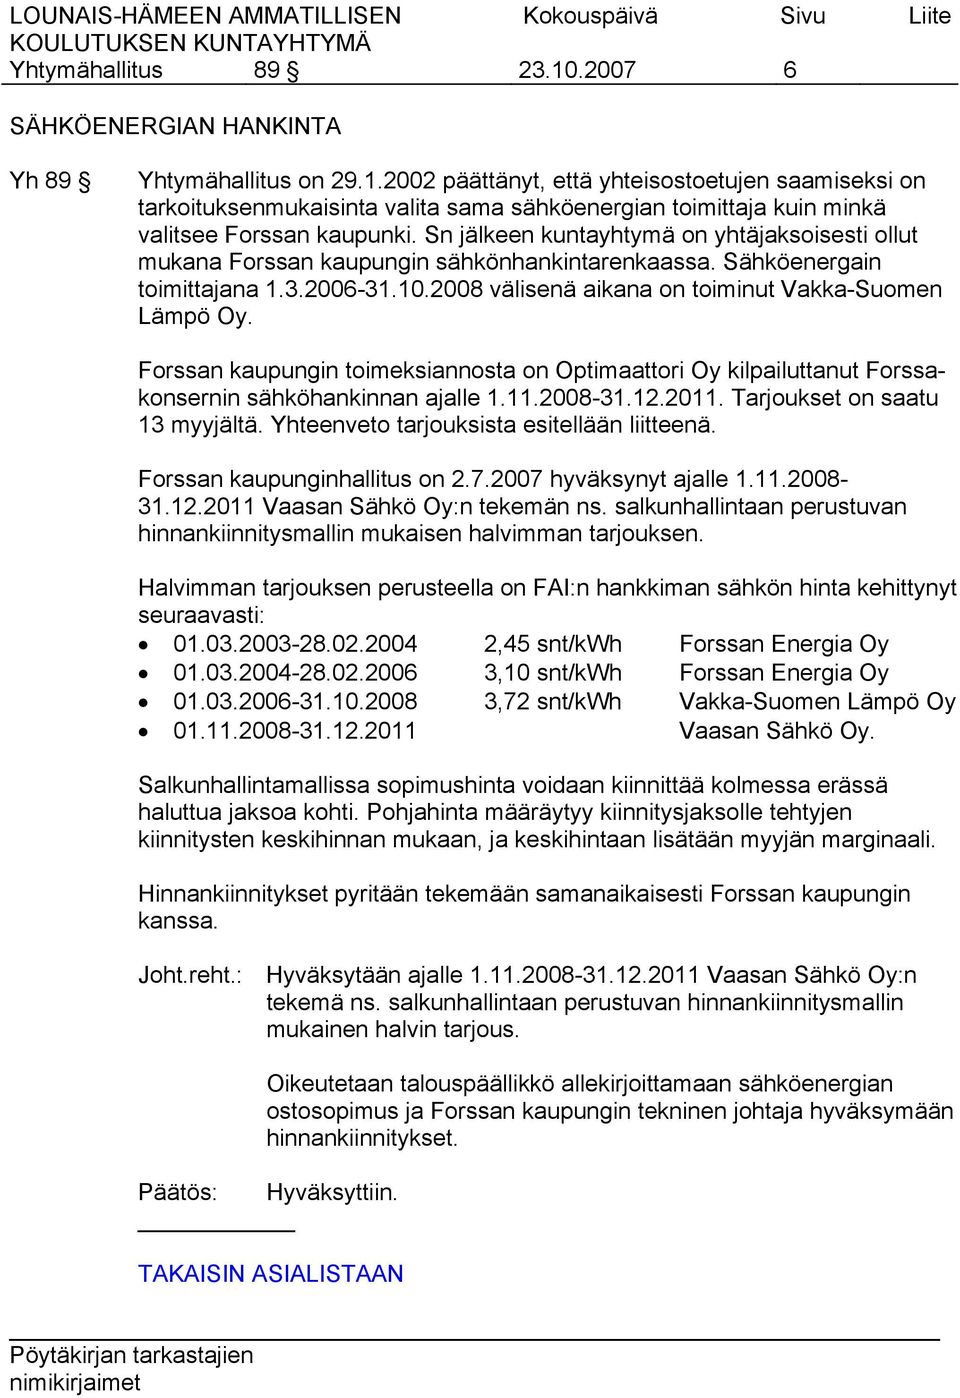 Forssan kaupungin toimeksiannosta on Optimaattori Oy kilpailuttanut Forssakonsernin sähköhankinnan ajalle 1.11.2008-31.12.2011. Tarjoukset on saatu 13 myyjältä.